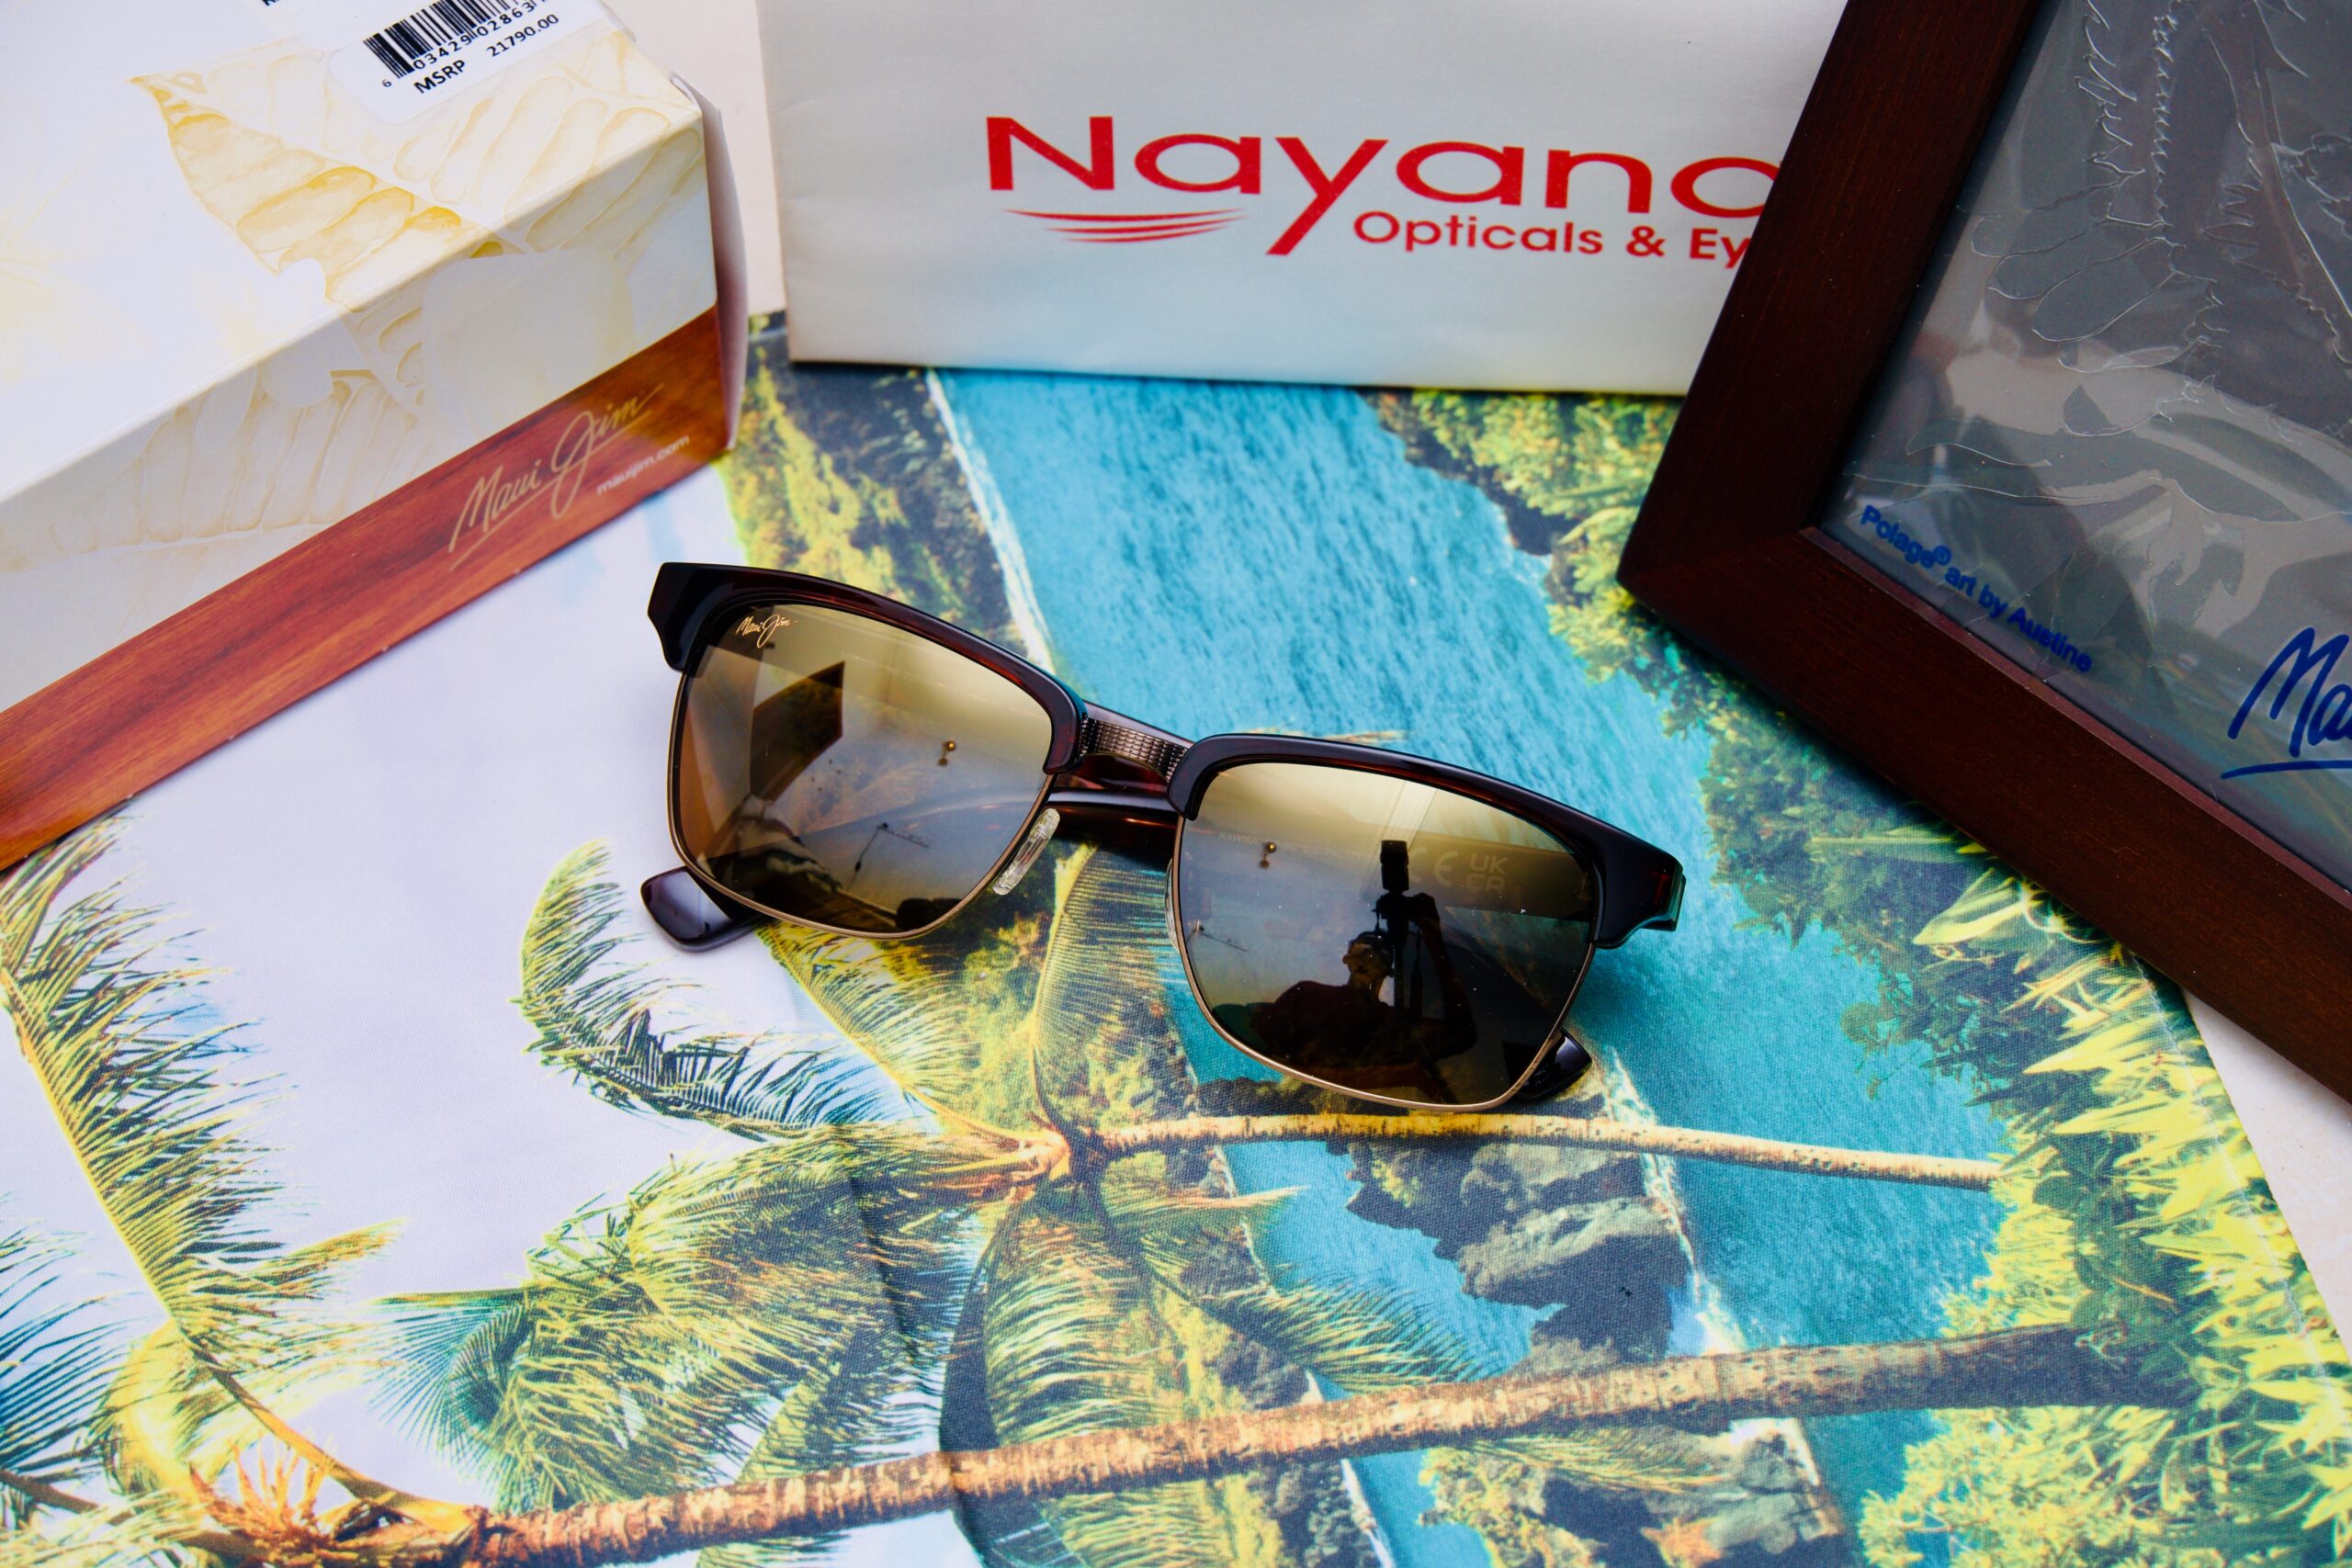 Maui Jim sunglasses in kerala